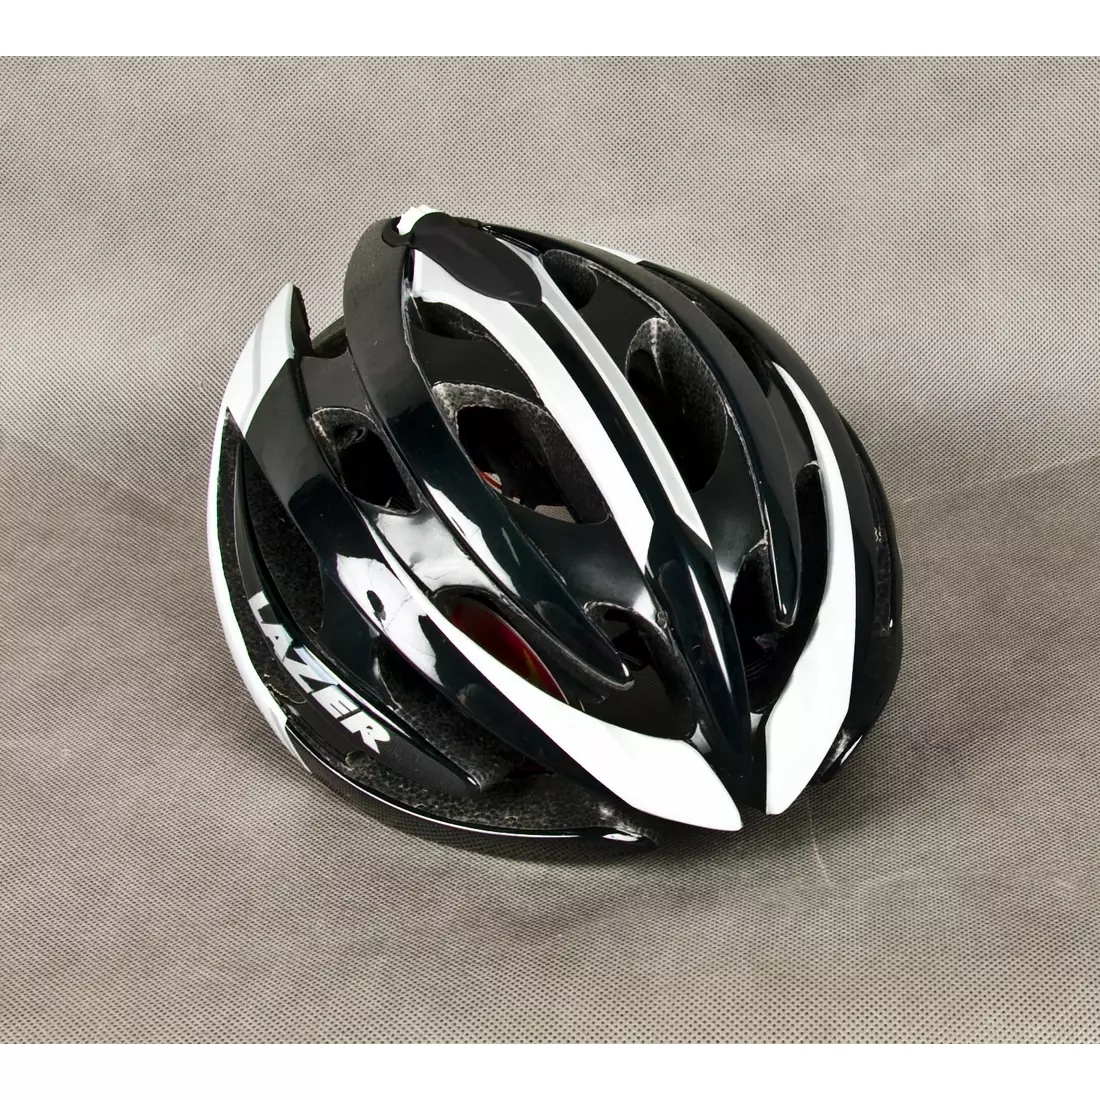 LAZER GENESIS bicycle helmet, road, white and black